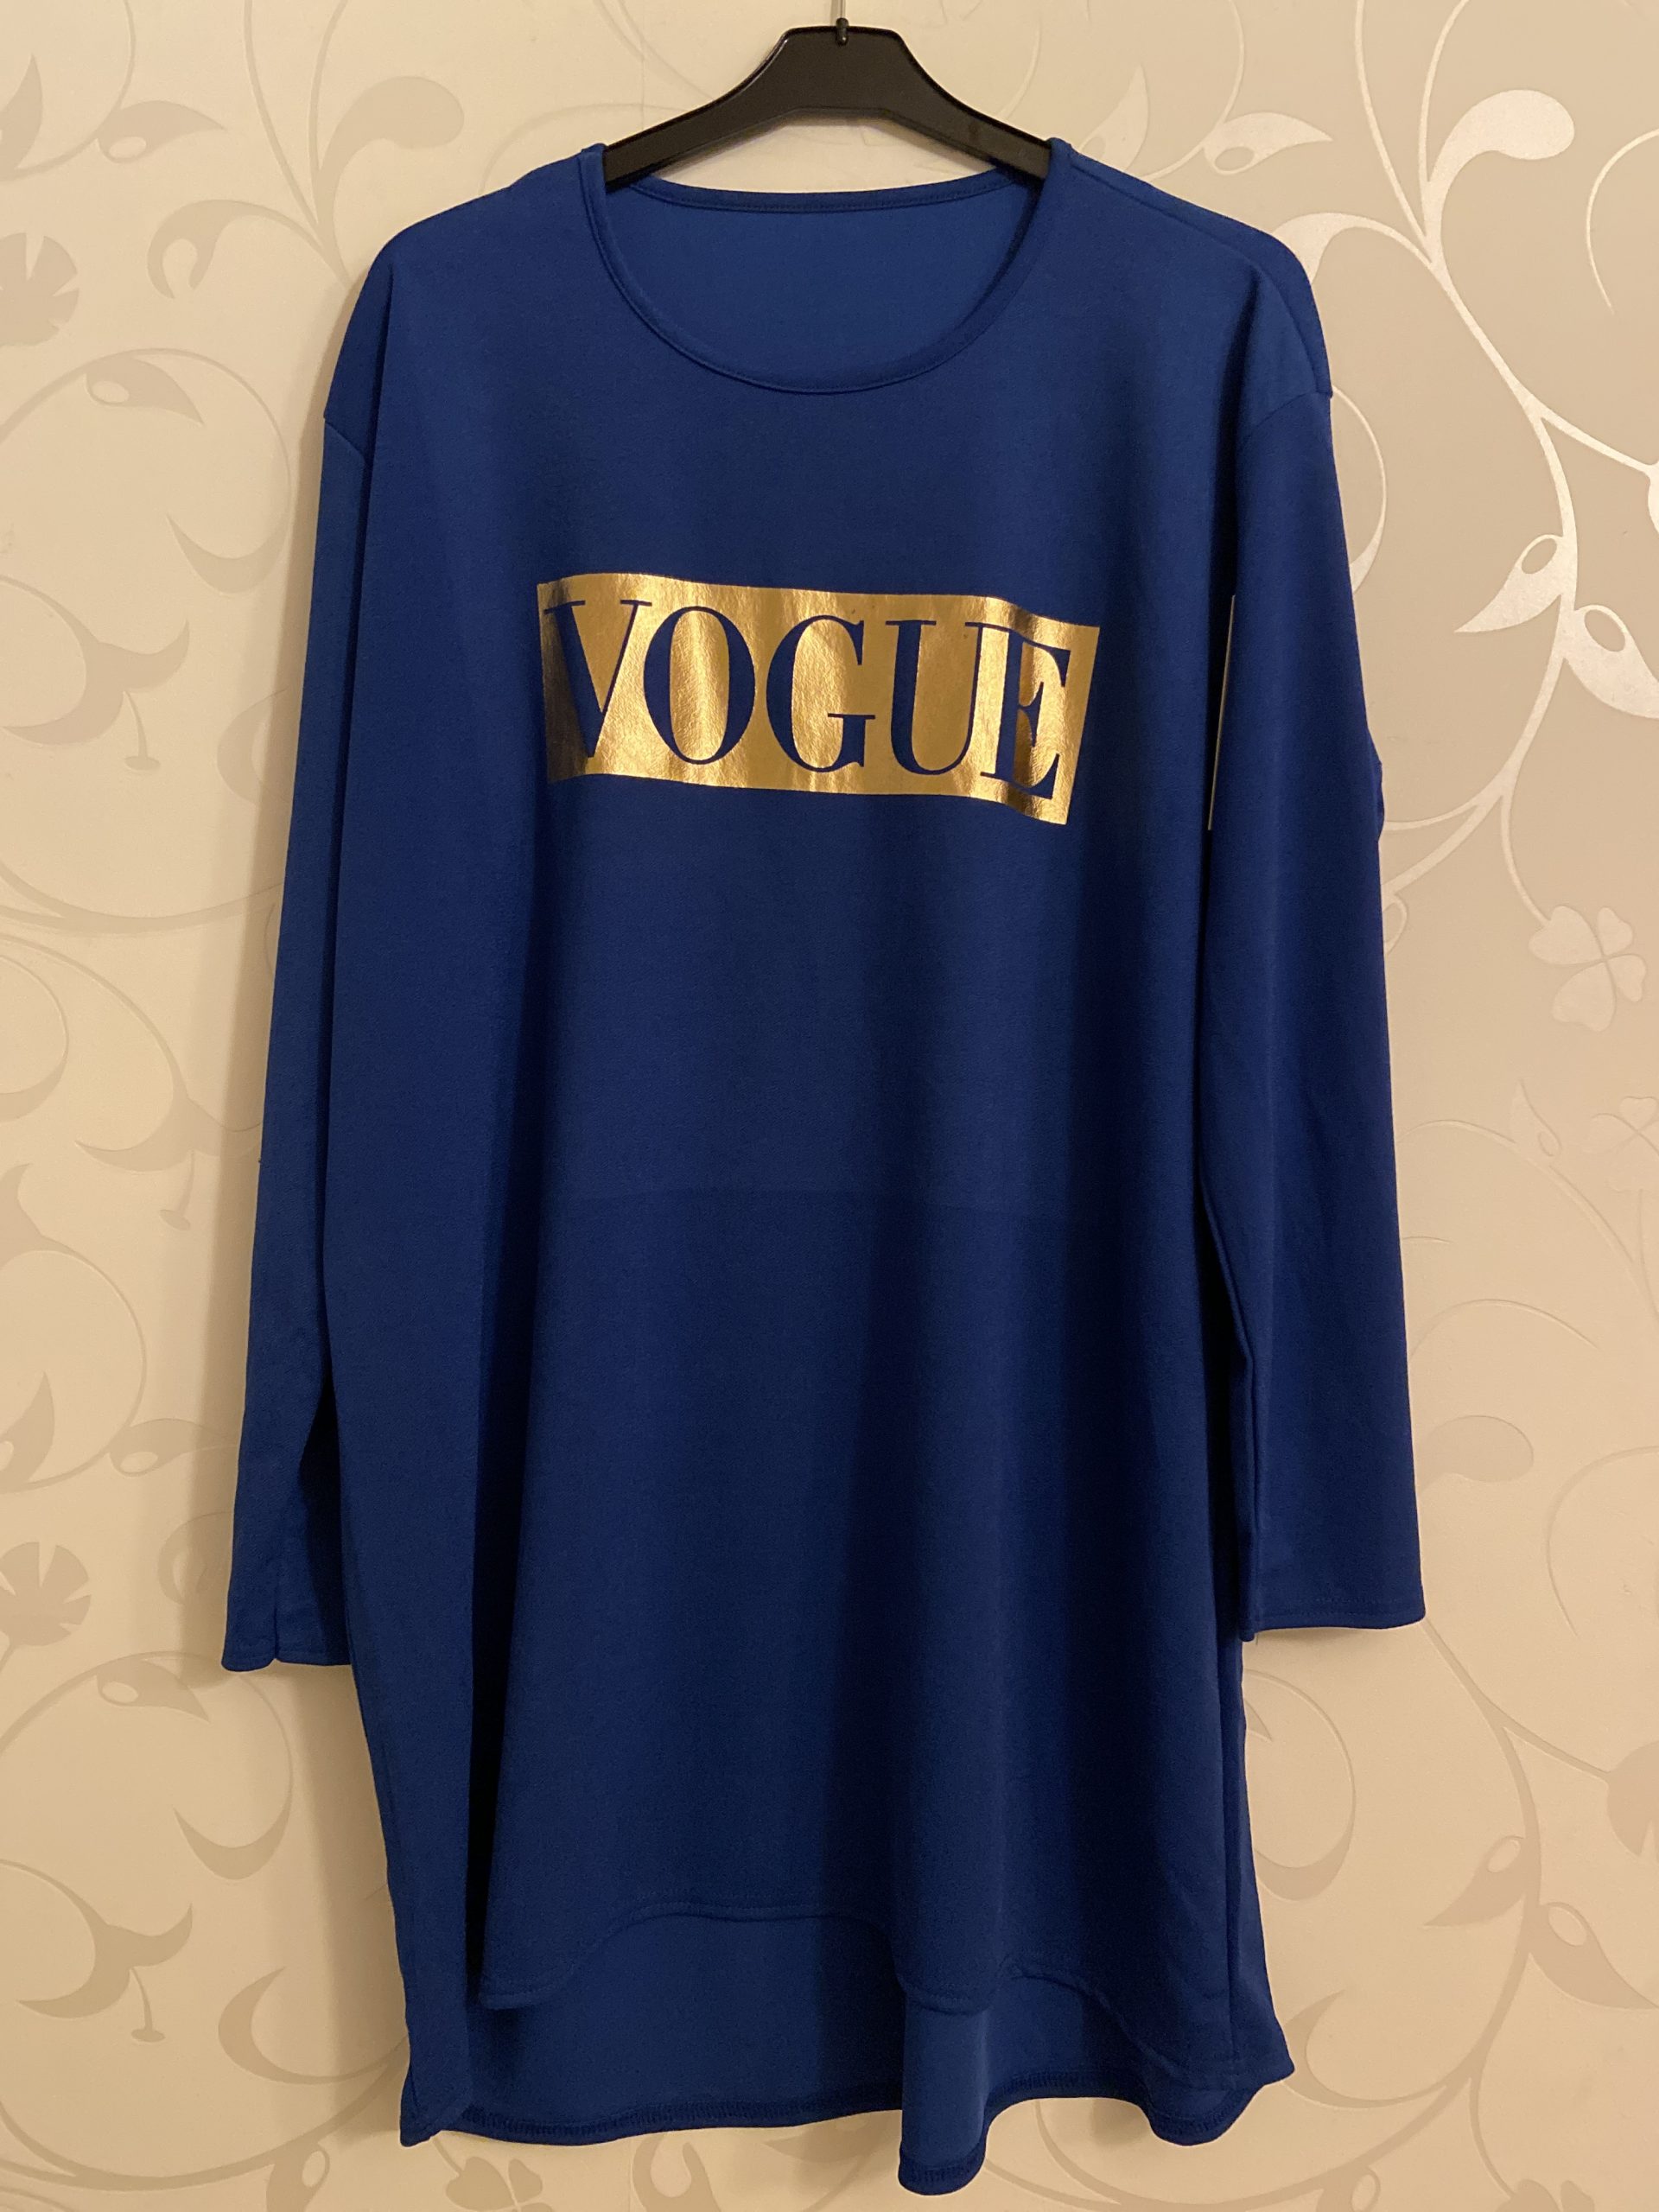 Tunika kjole Vogue motiv ⋆ Storpige.dk